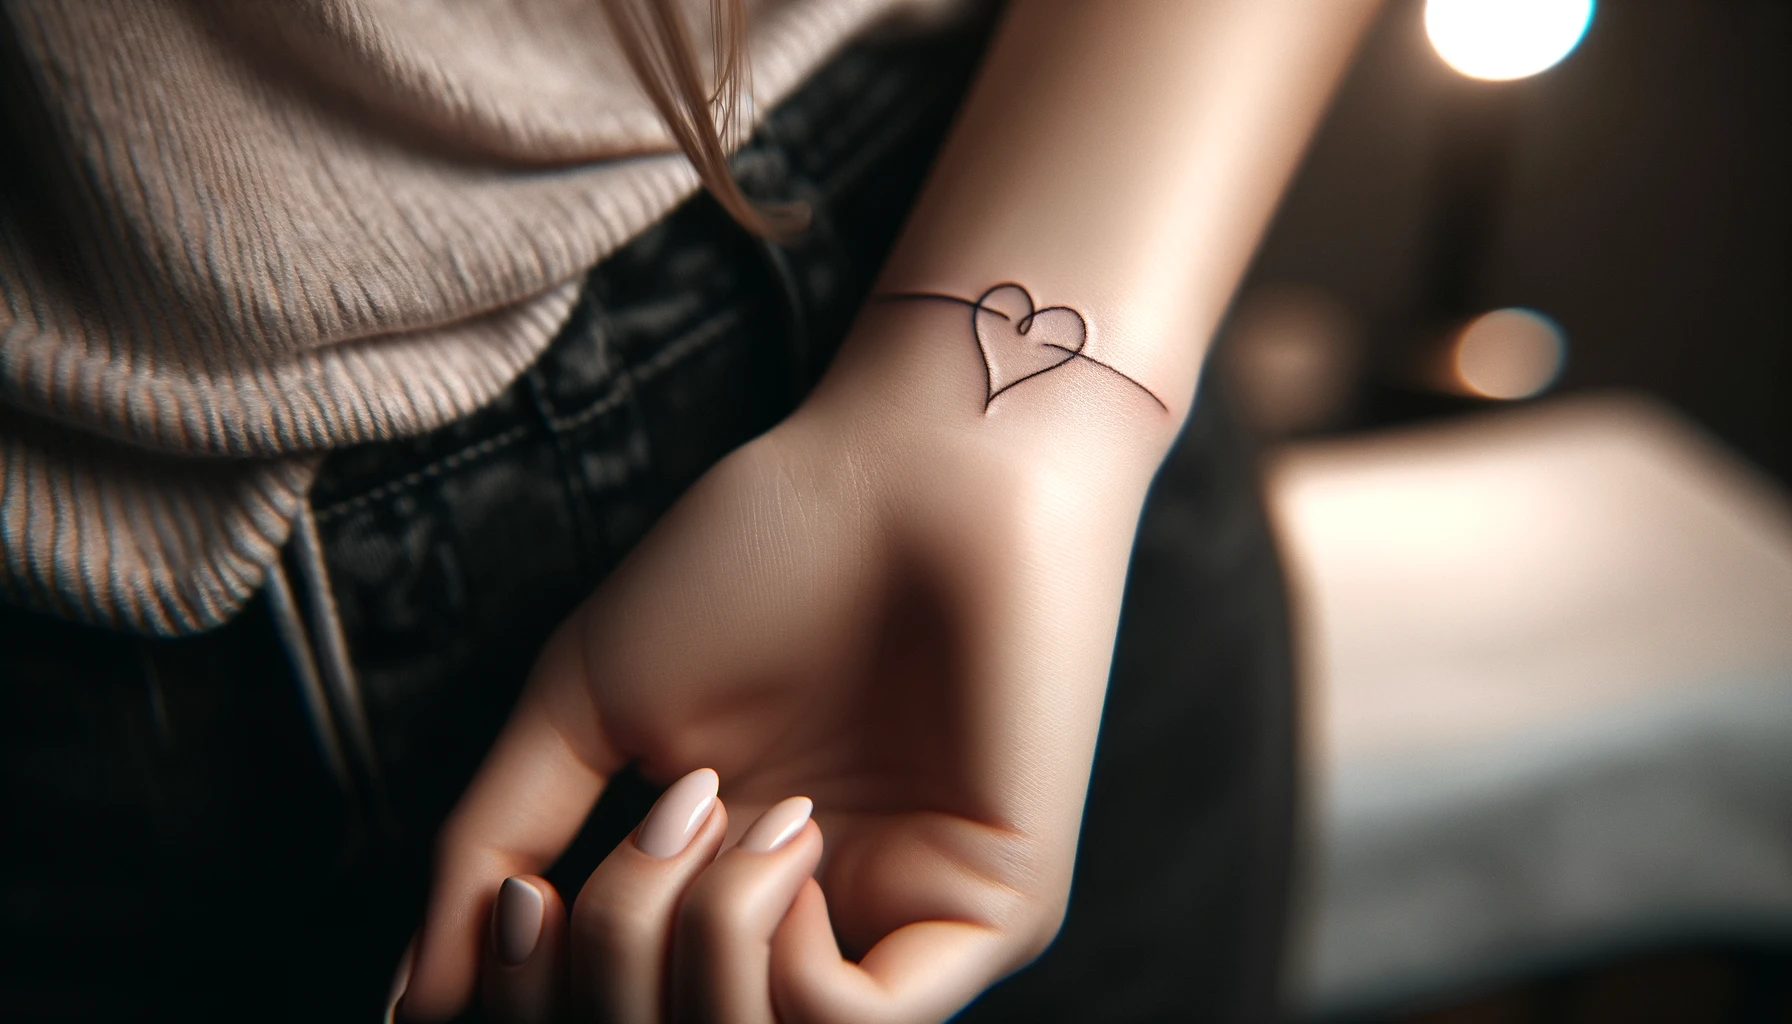 Tatuaż w kształcie serca umieszczony na nadgarstku delikatnie obejmuje skórę, tworząc subtelny i romantyczny akcent. Czyste linie tworzą dwie połączone linie, które formują zarówno symbol nieskończoności, jak i serce, wyrażając miłość lub głębokie przywiązanie. Skóra wokół tatuażu jest nieskazitelna i jasna, co pozwala wzorowi wyróżnić się. Osoba z tatuażem jest ubrana w casualowe ubrania i delikatnie dotyka swojego nadgarstka, co nadaje całej scenie spokojny nastrój